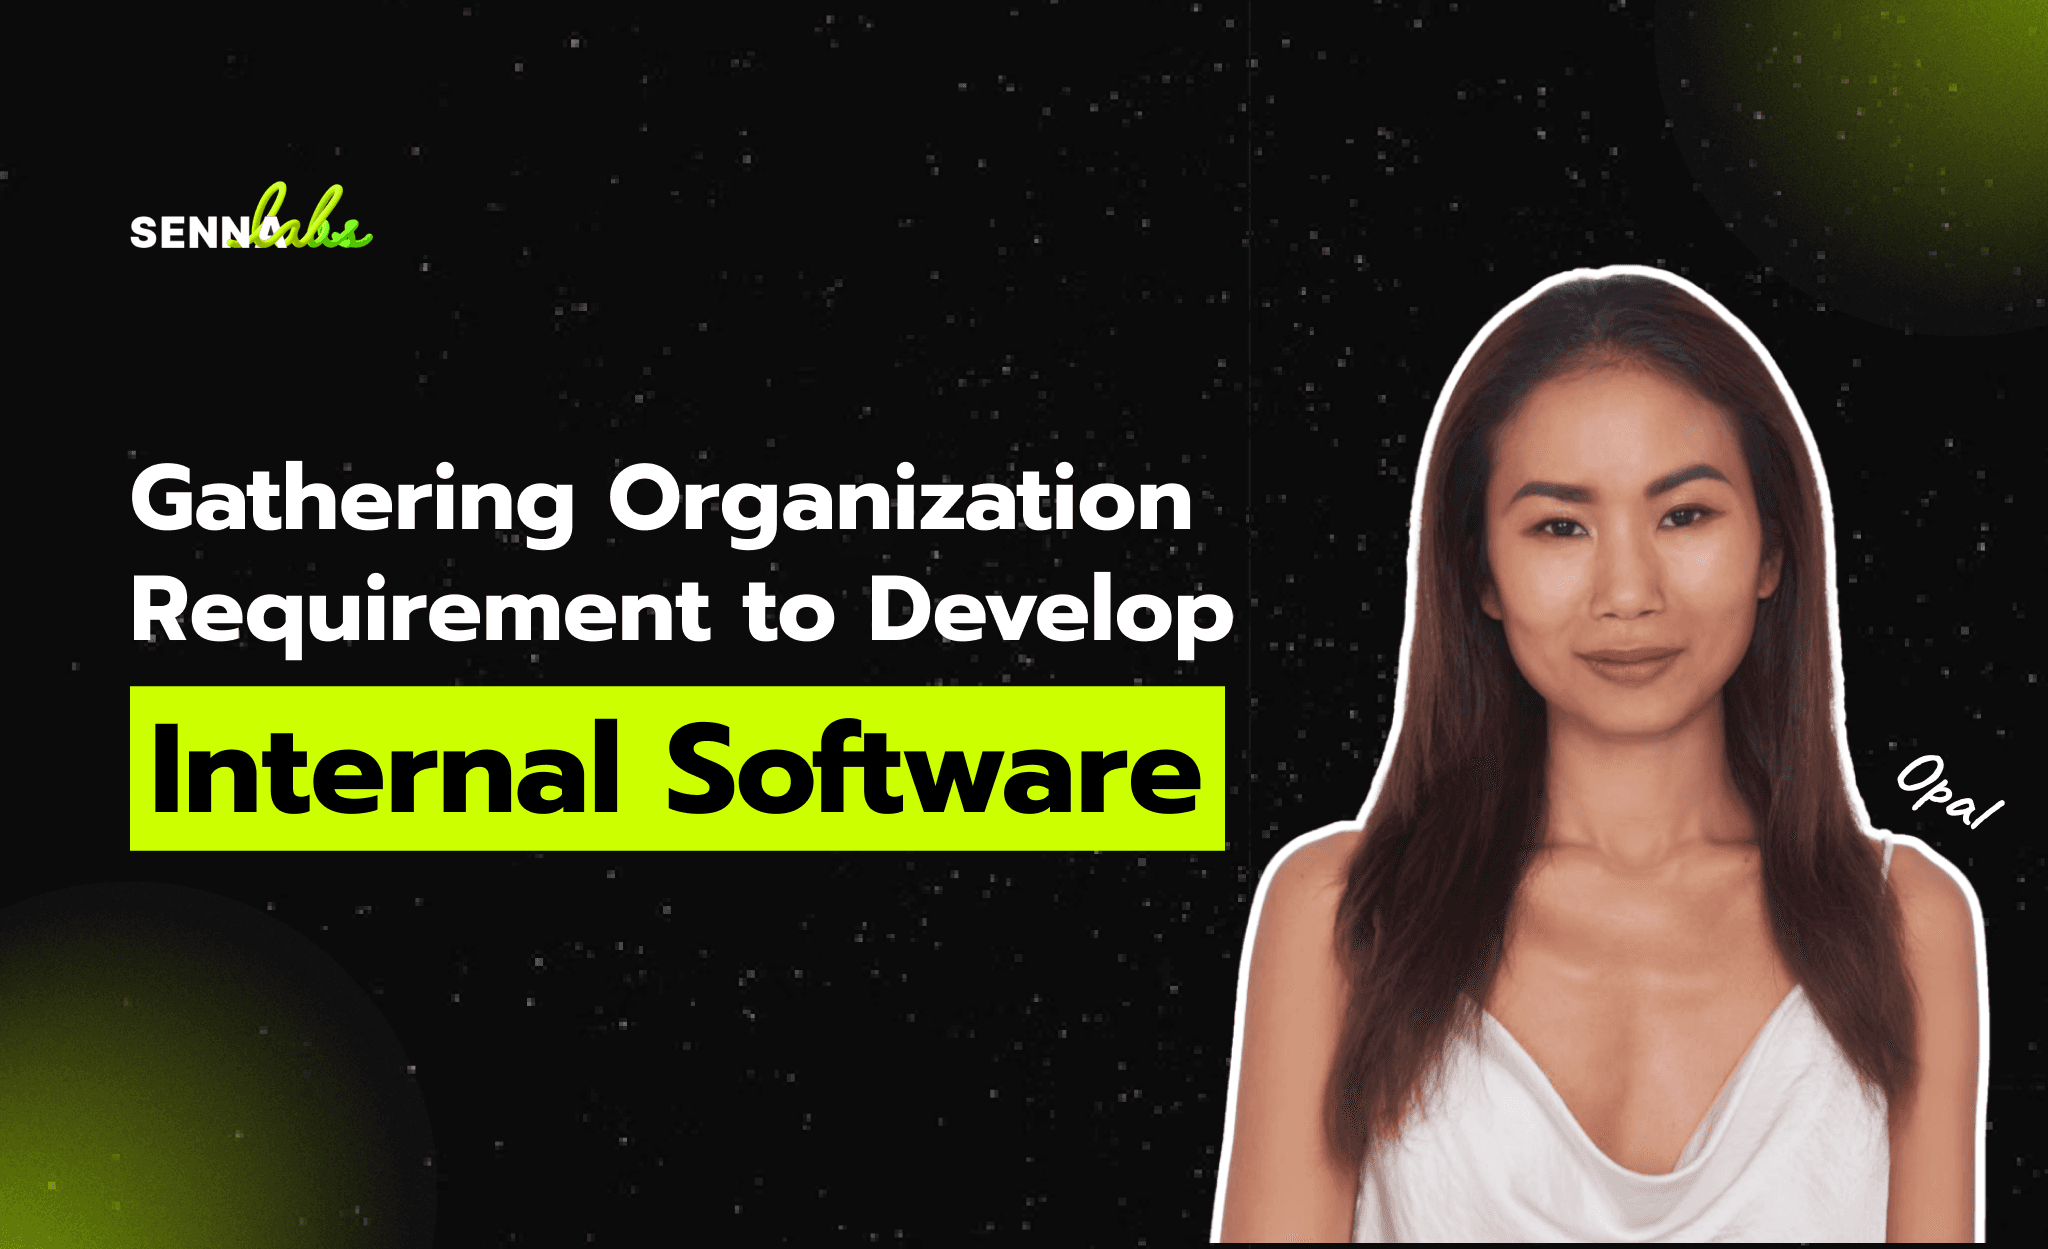 วิธีเก็บ requirement ภายในองค์กรก่อนทำ internal software